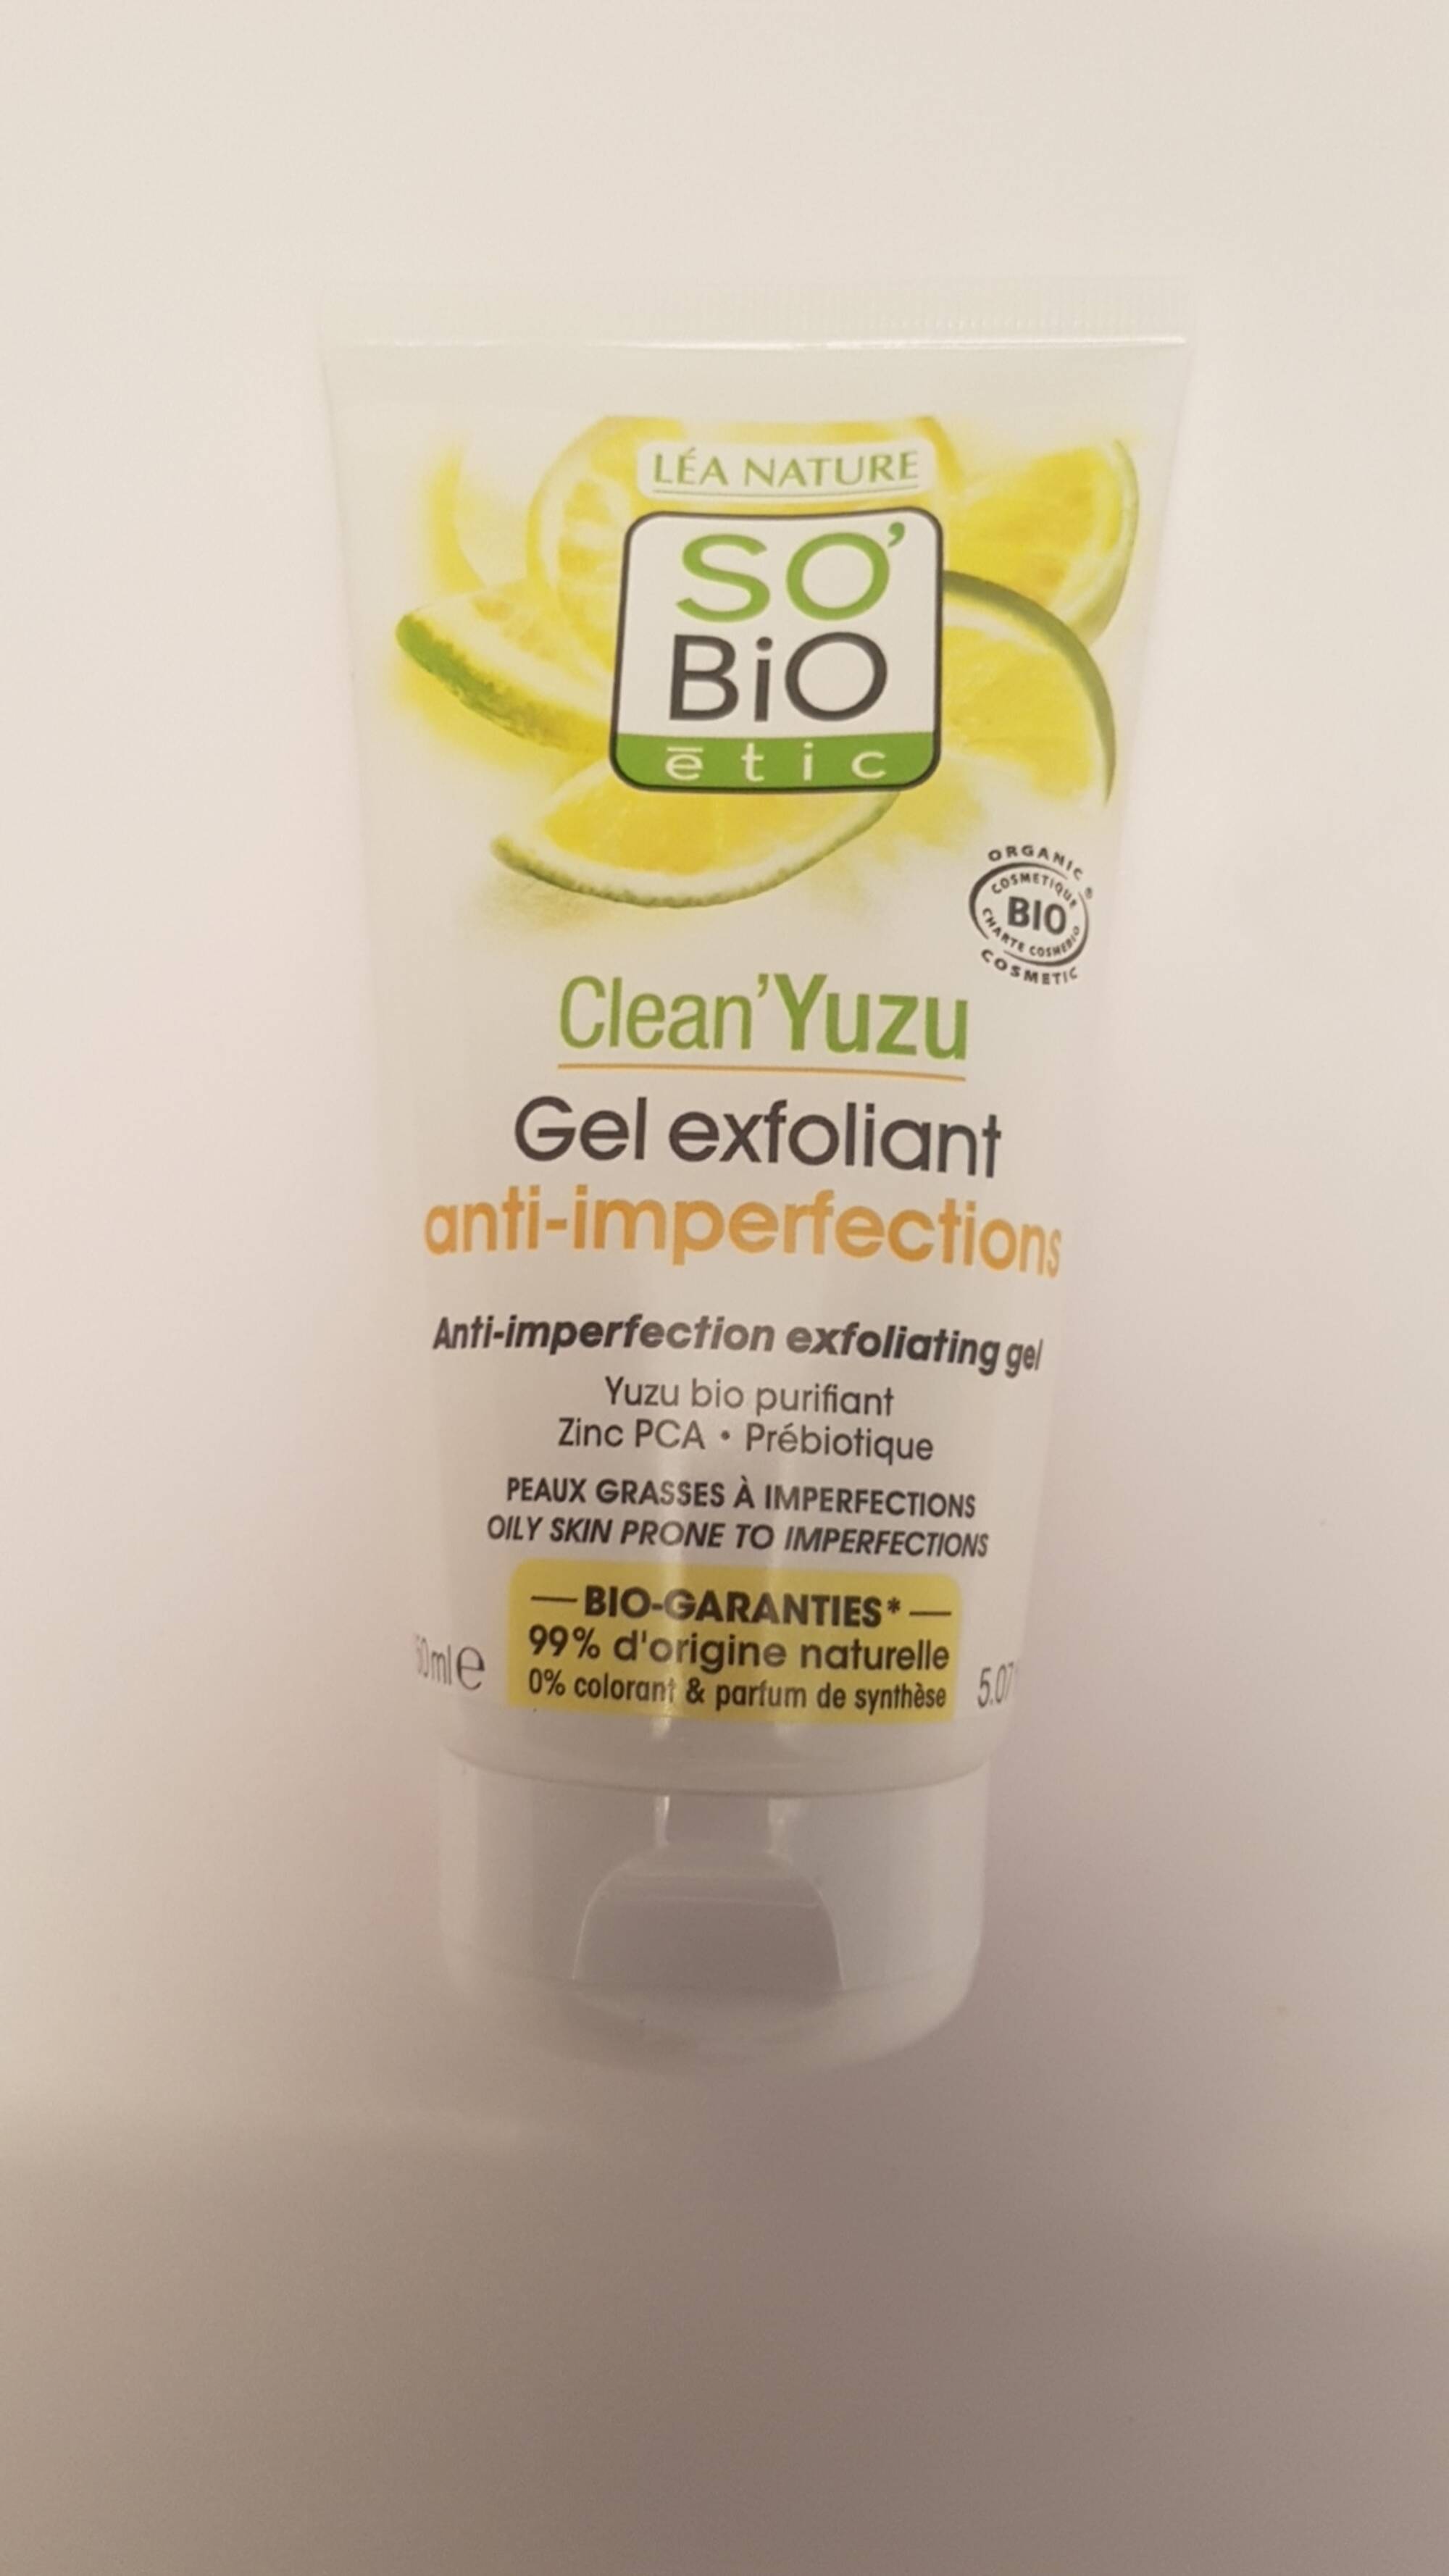 SO'BIO ÉTIC - Clean'Yuzu - Gel exfoliant anti-imperfections